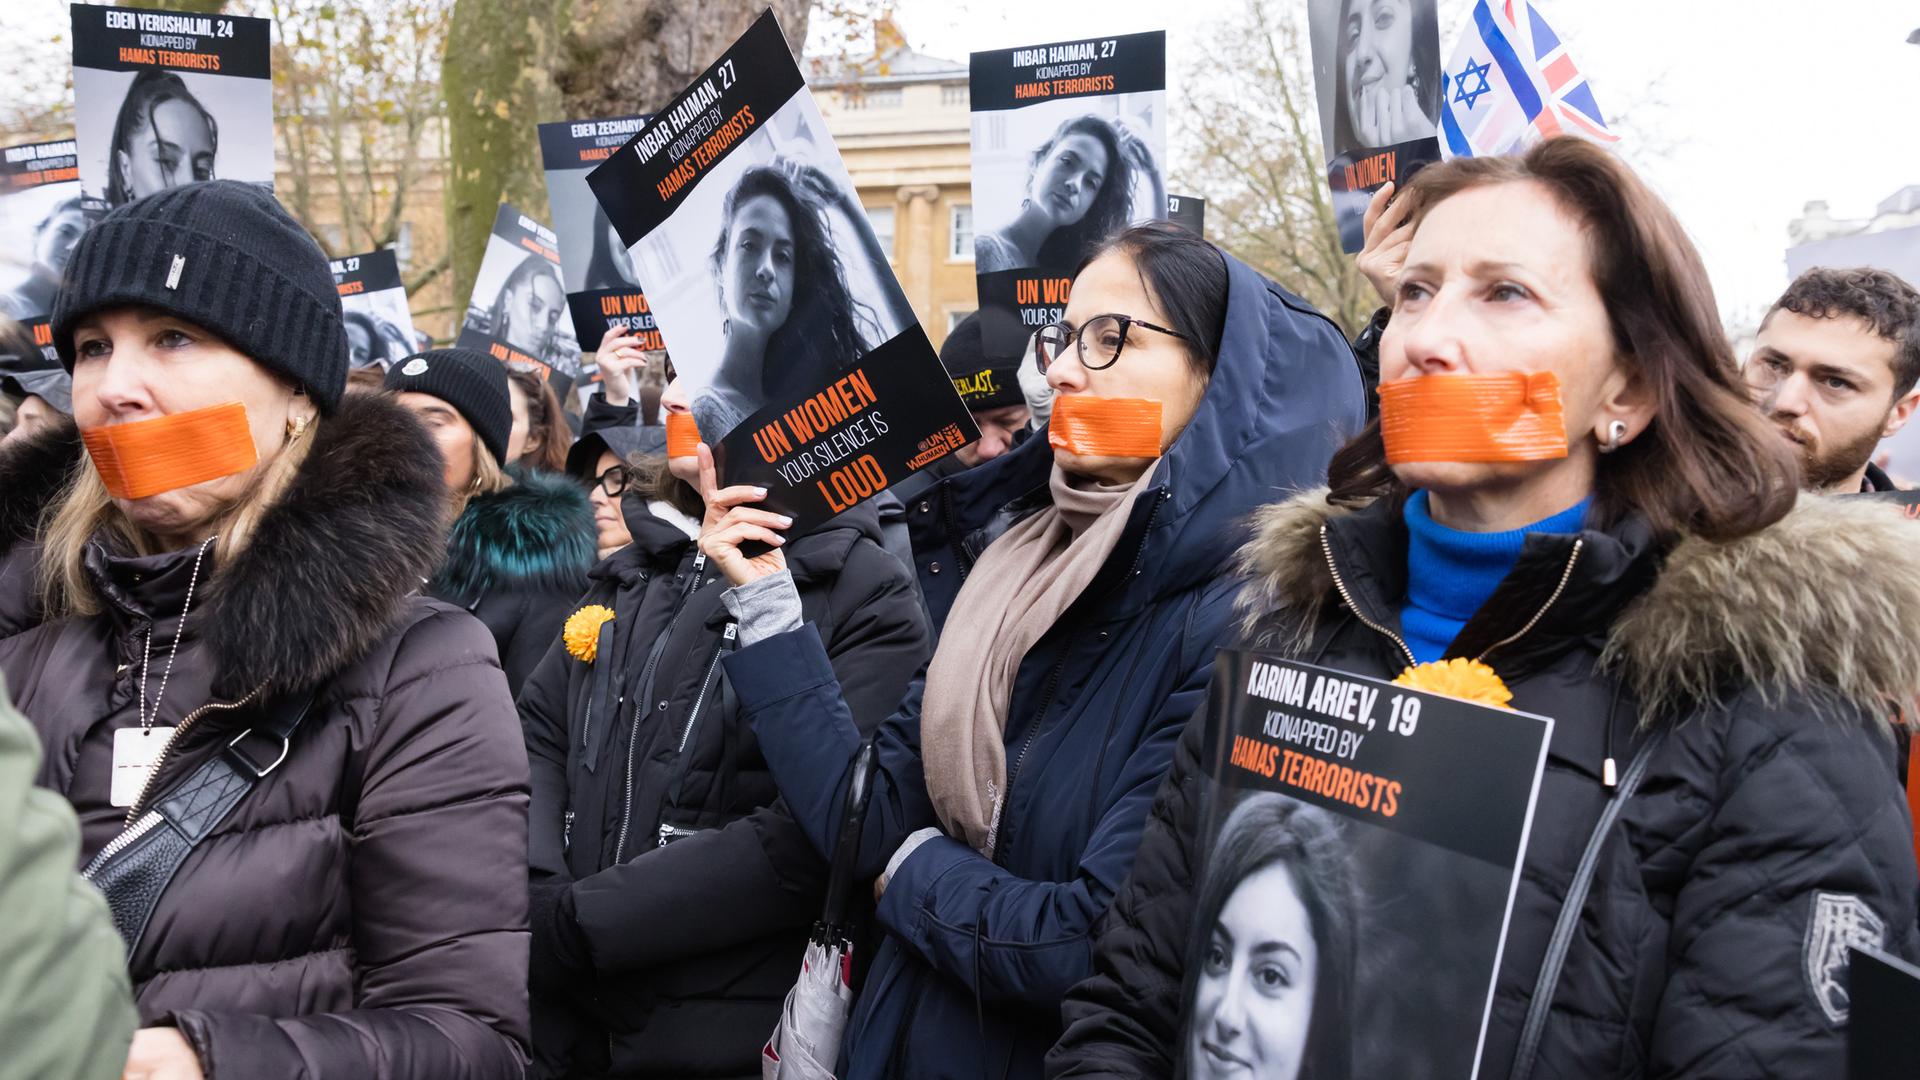 Bei einer Demonstration in London haben sich Teilnehmende den Mund zugeklebt und halten Schilder hoch.